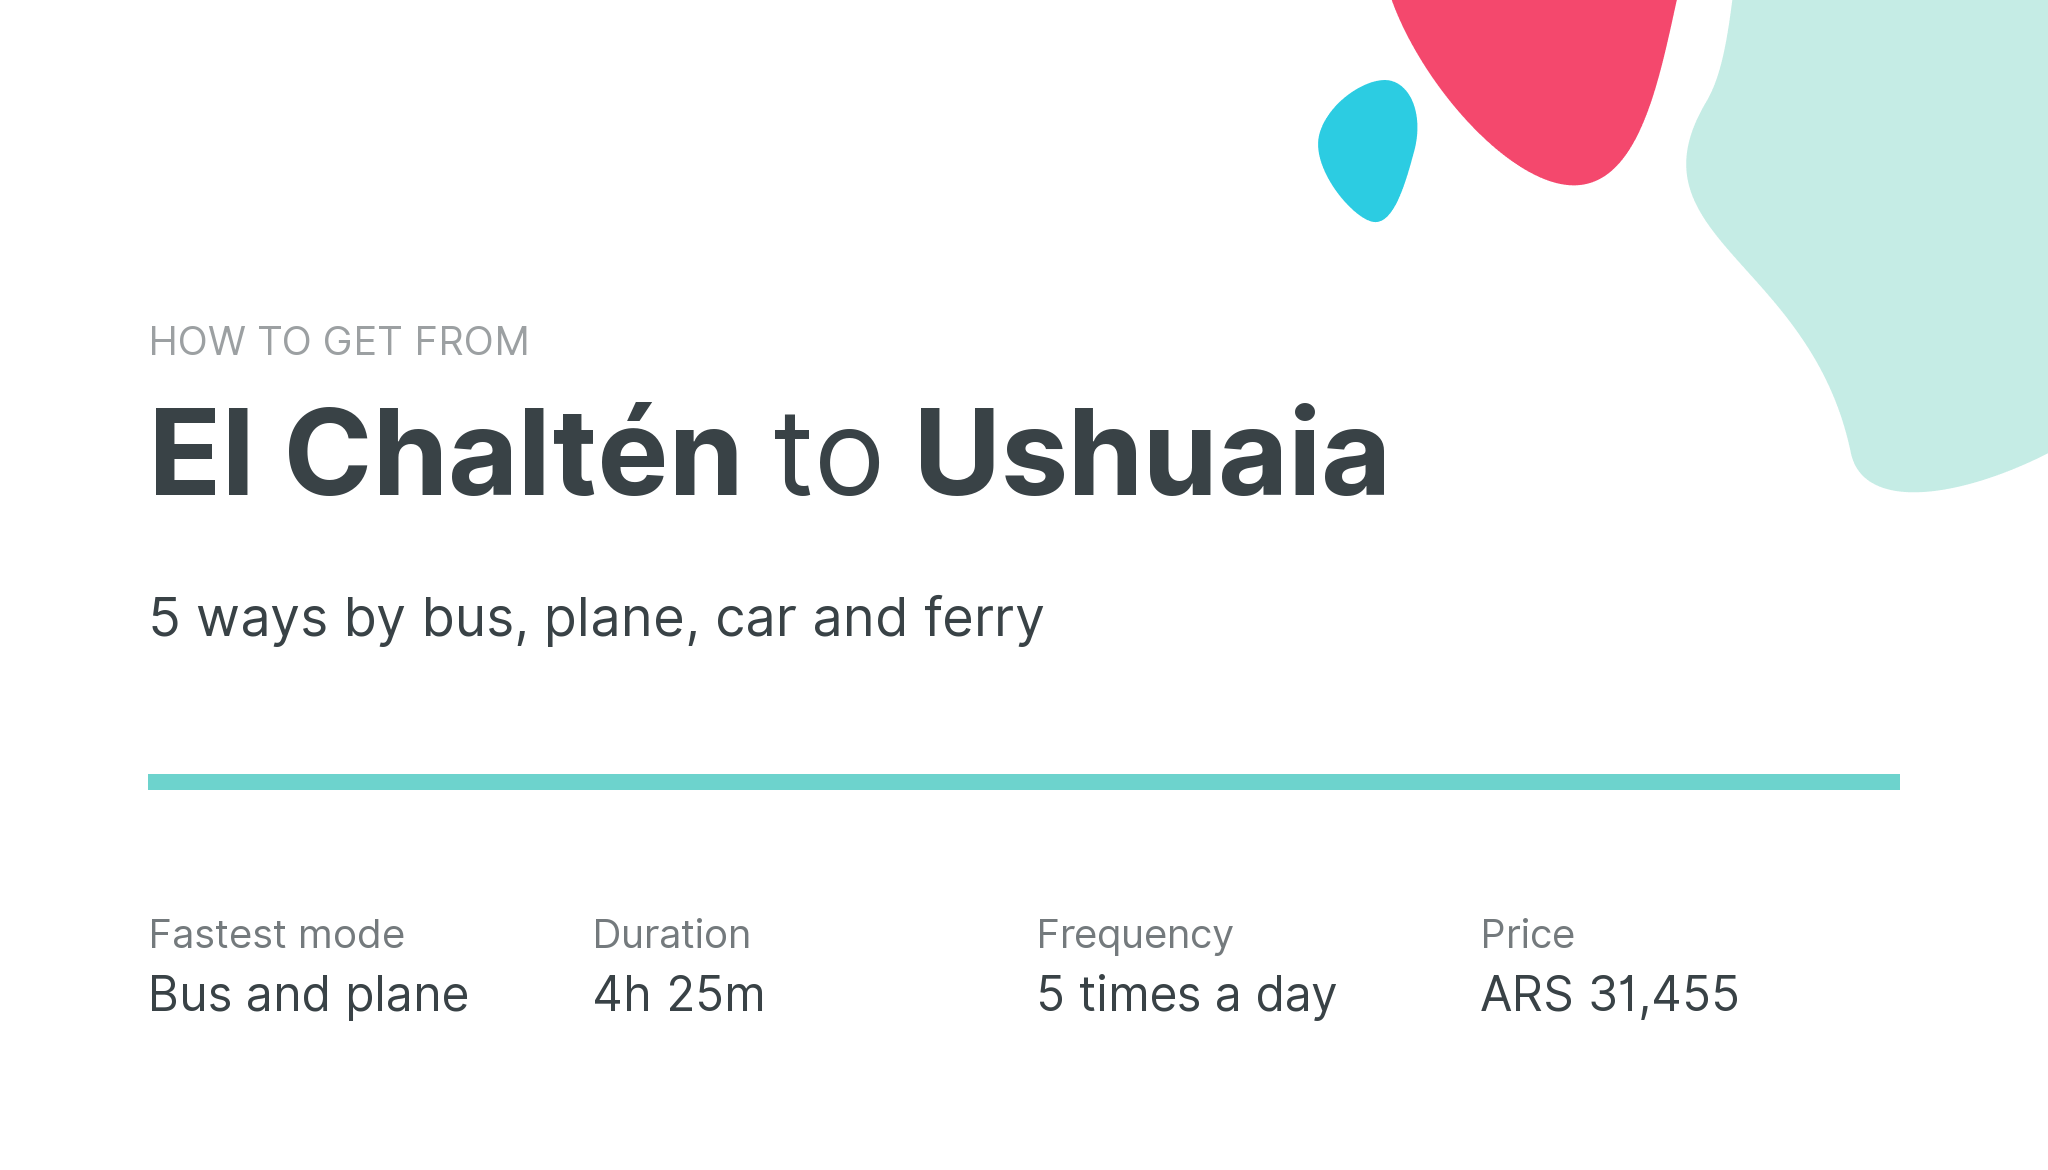 How do I get from El Chaltén to Ushuaia